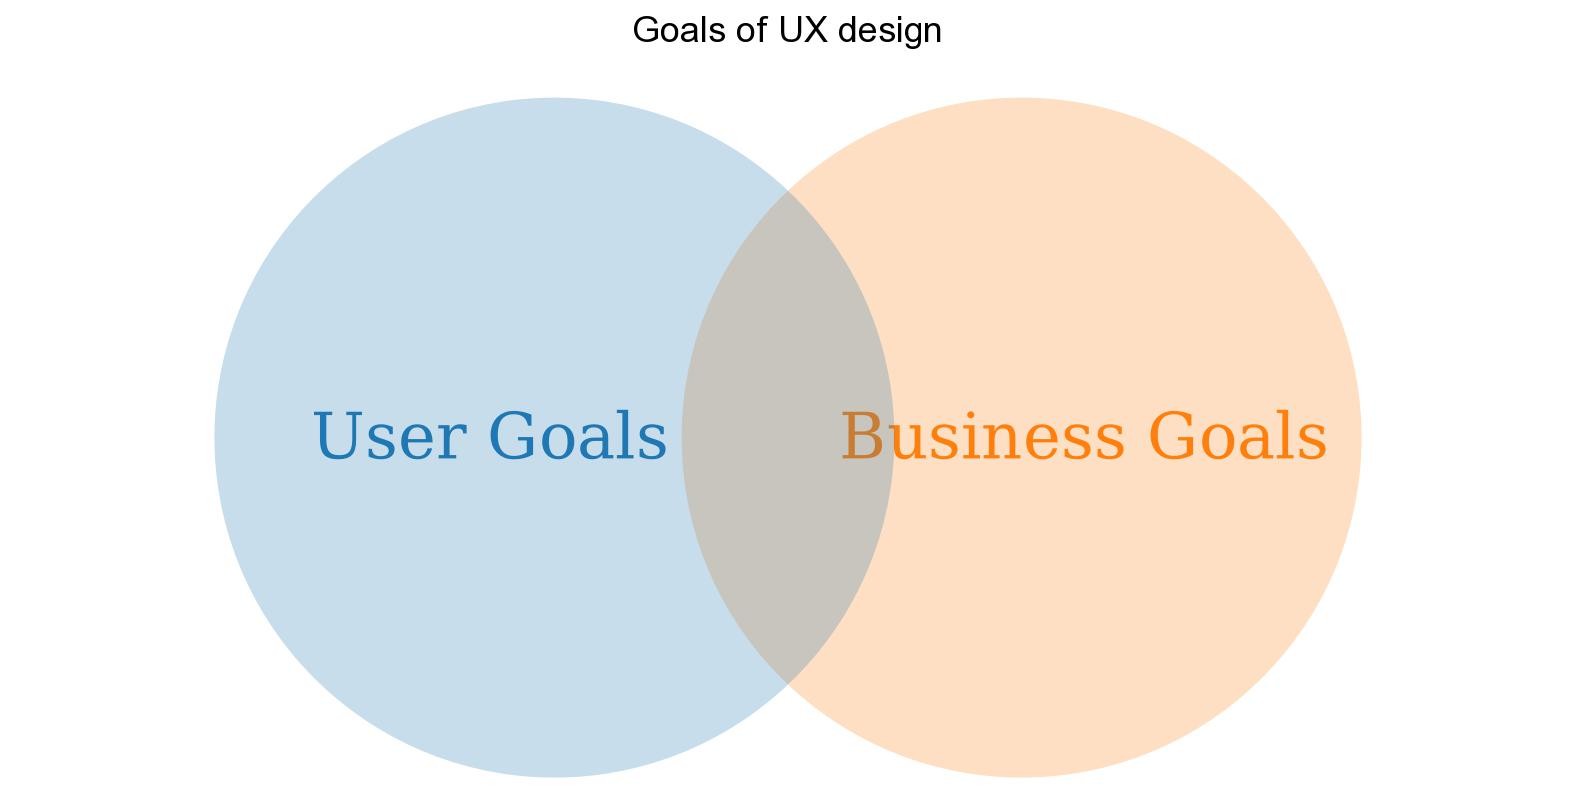 Goals of UX design.